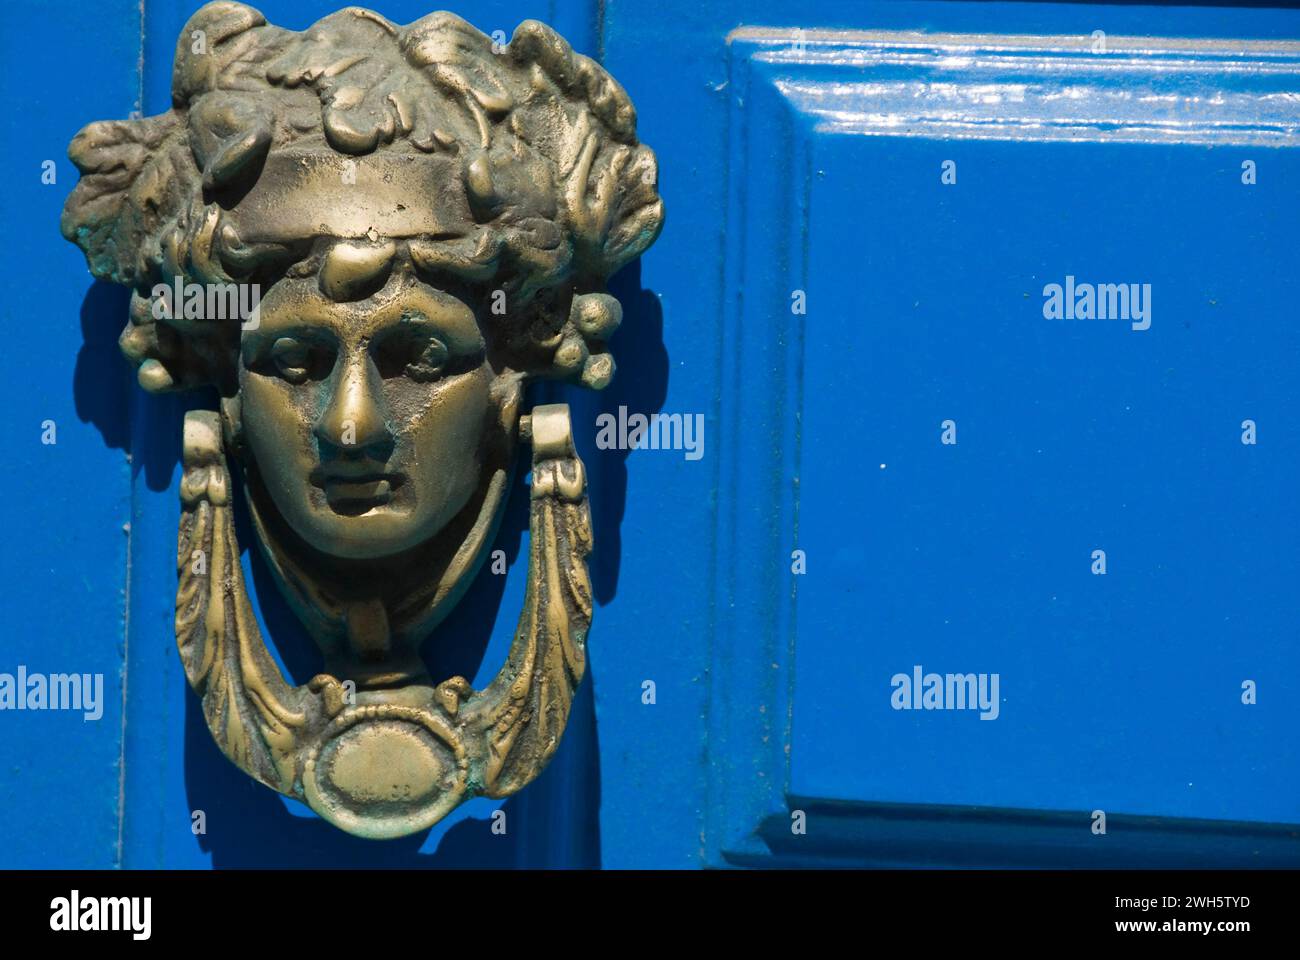 Eine kleine Statue neben einer blauen Tür. Stockfoto